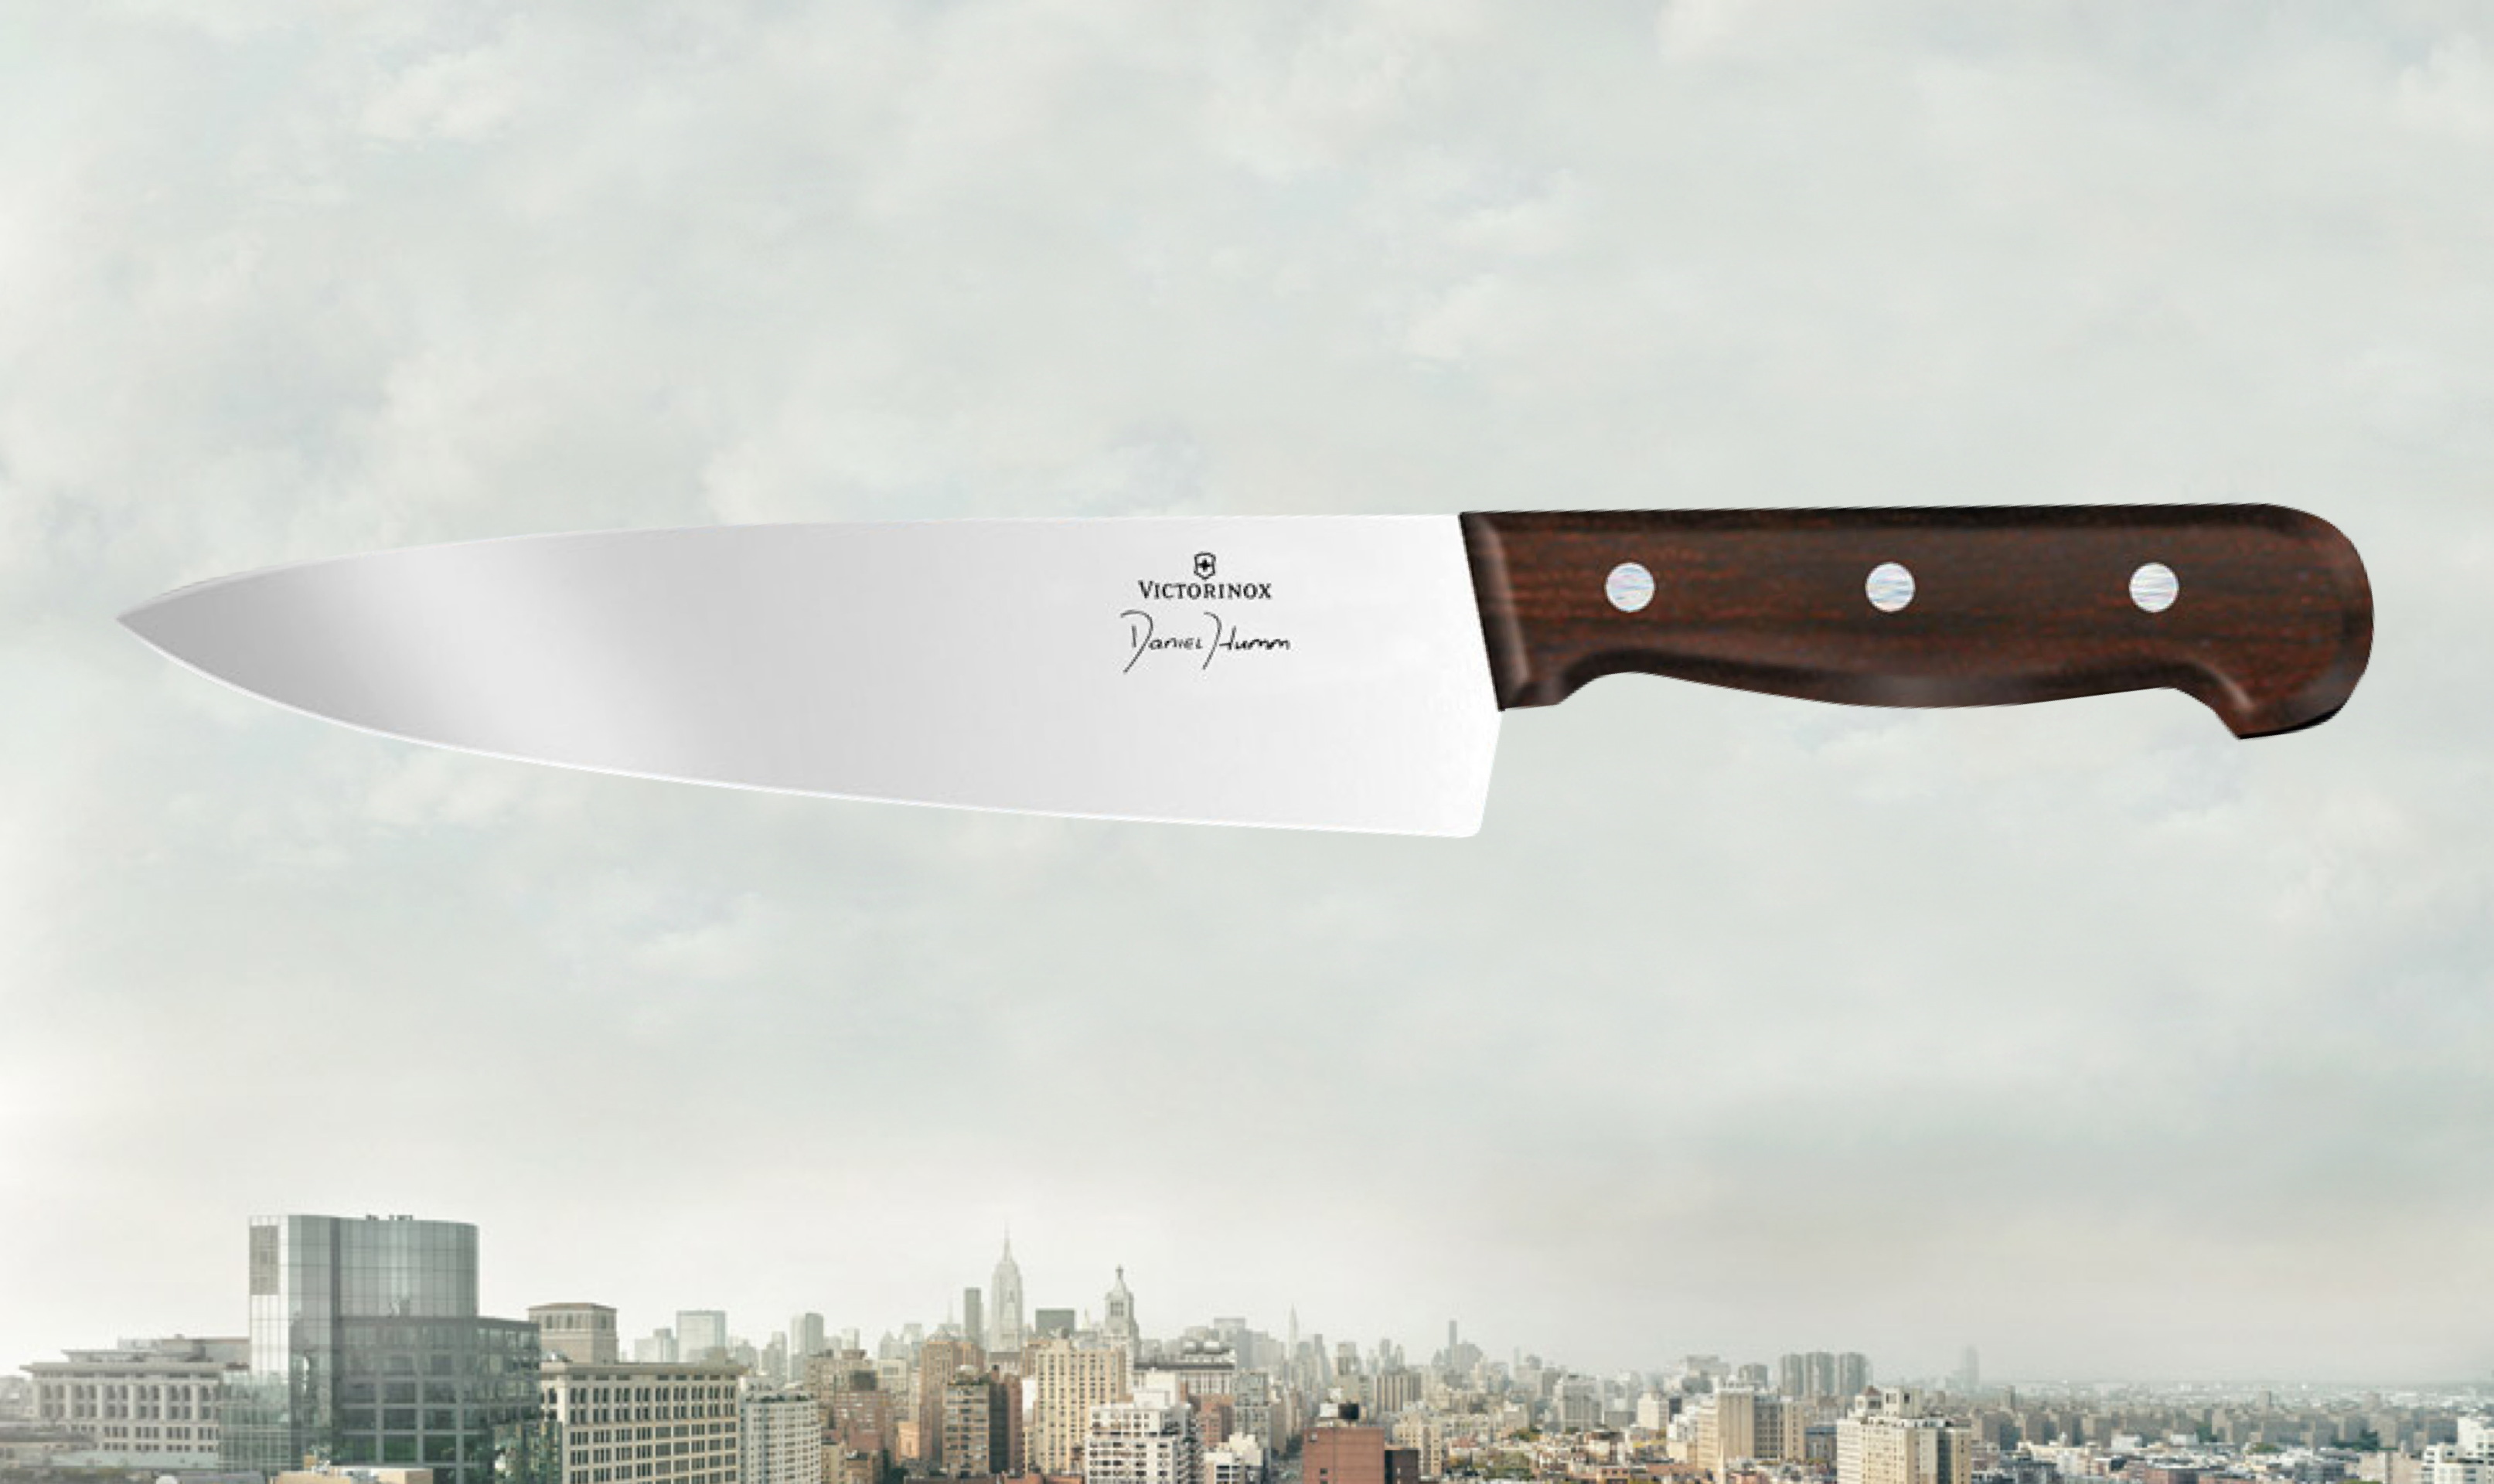 Abbildung: Daniel Humm Kollektion Messer – Elegantes Design, aussergewöhnliche Qualität.